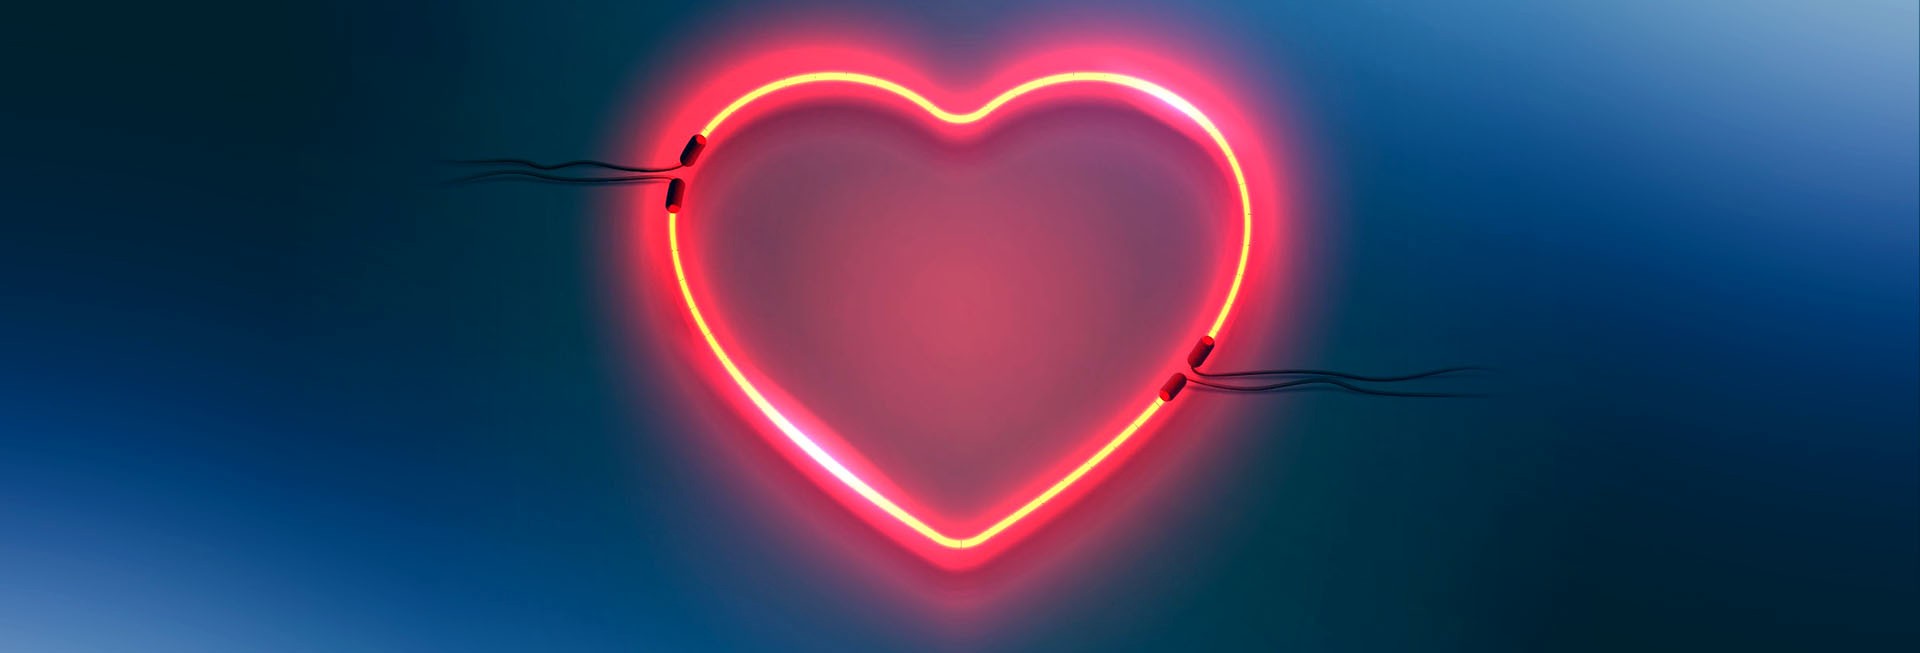 Love In Action Neon Heart Website Graphic